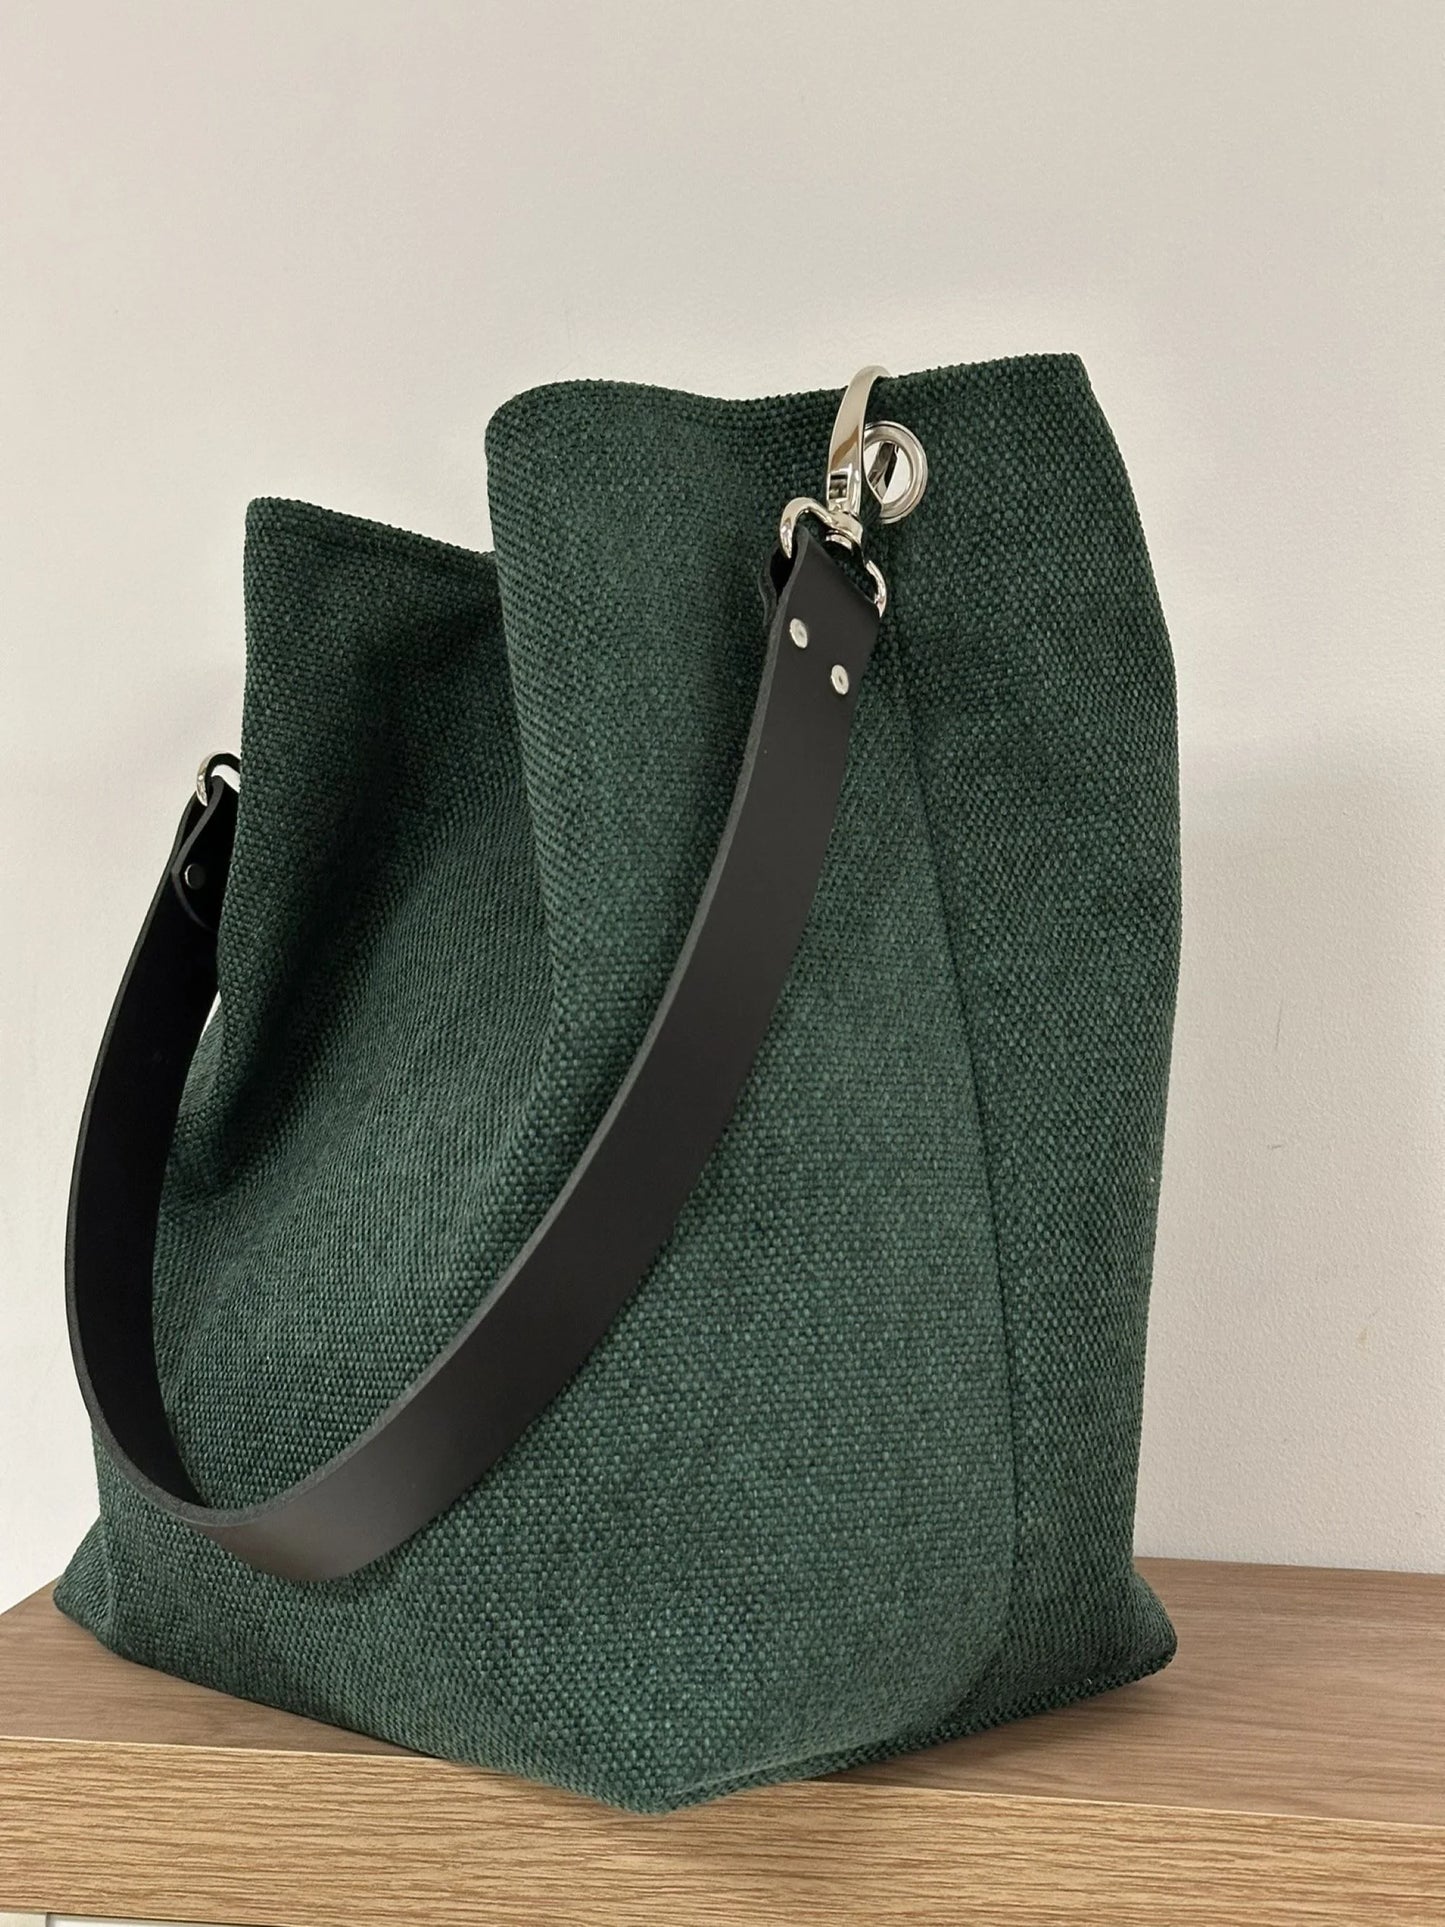 Le sac hobo en toile vert forêt et son anse en cuir noir.